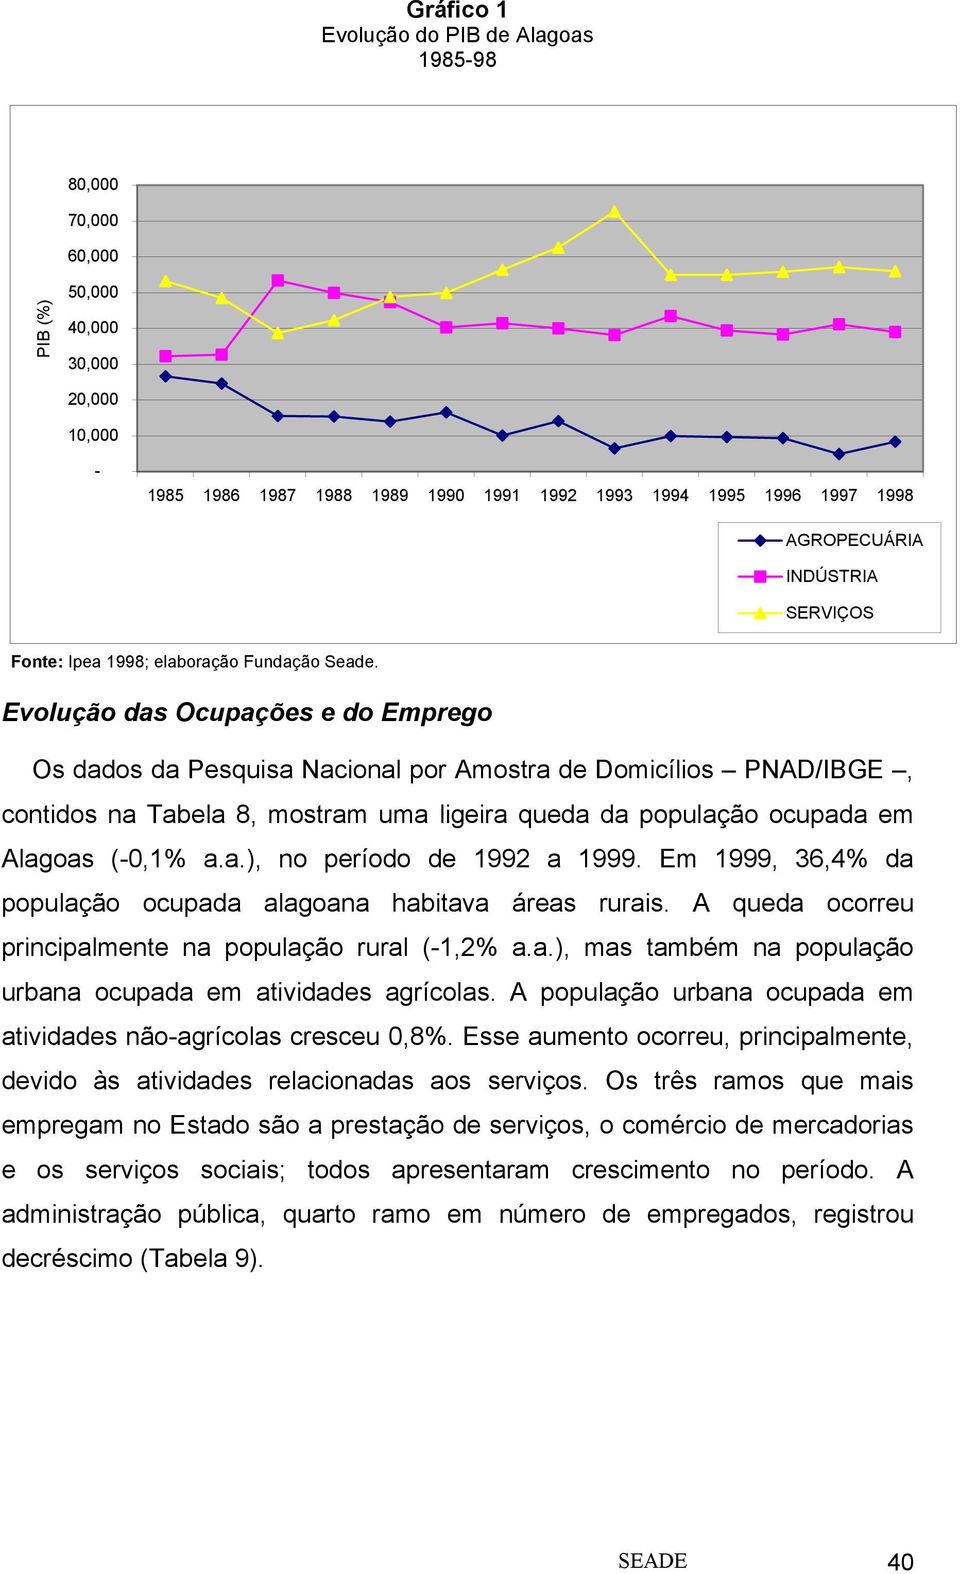 Evolução das Ocupações e do Emprego Os dados da Pesquisa Nacional por Amostra de Domicílios PNAD/IBGE, contidos na Tabela 8, mostram uma ligeira queda da população ocupada em Alagoas (-0,1% a.a.), no período de 1992 a 1999.